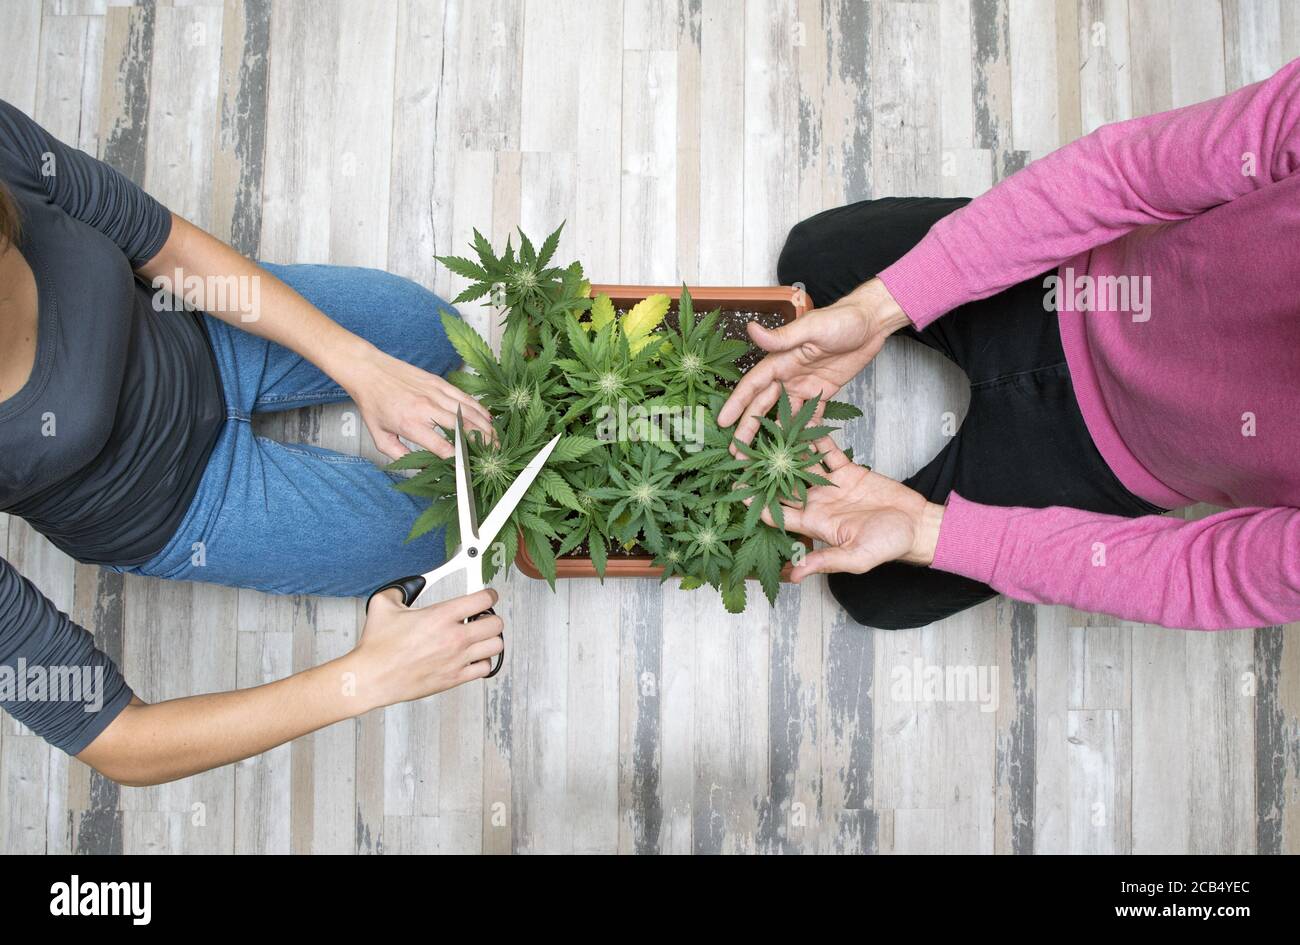 Taglio manuale delle piante di cannabis. La mano della donna è impegnata nella potatura della cannabis per uso terapeutico. Informazioni di base sul concetto di marijuana medica. Foto Stock